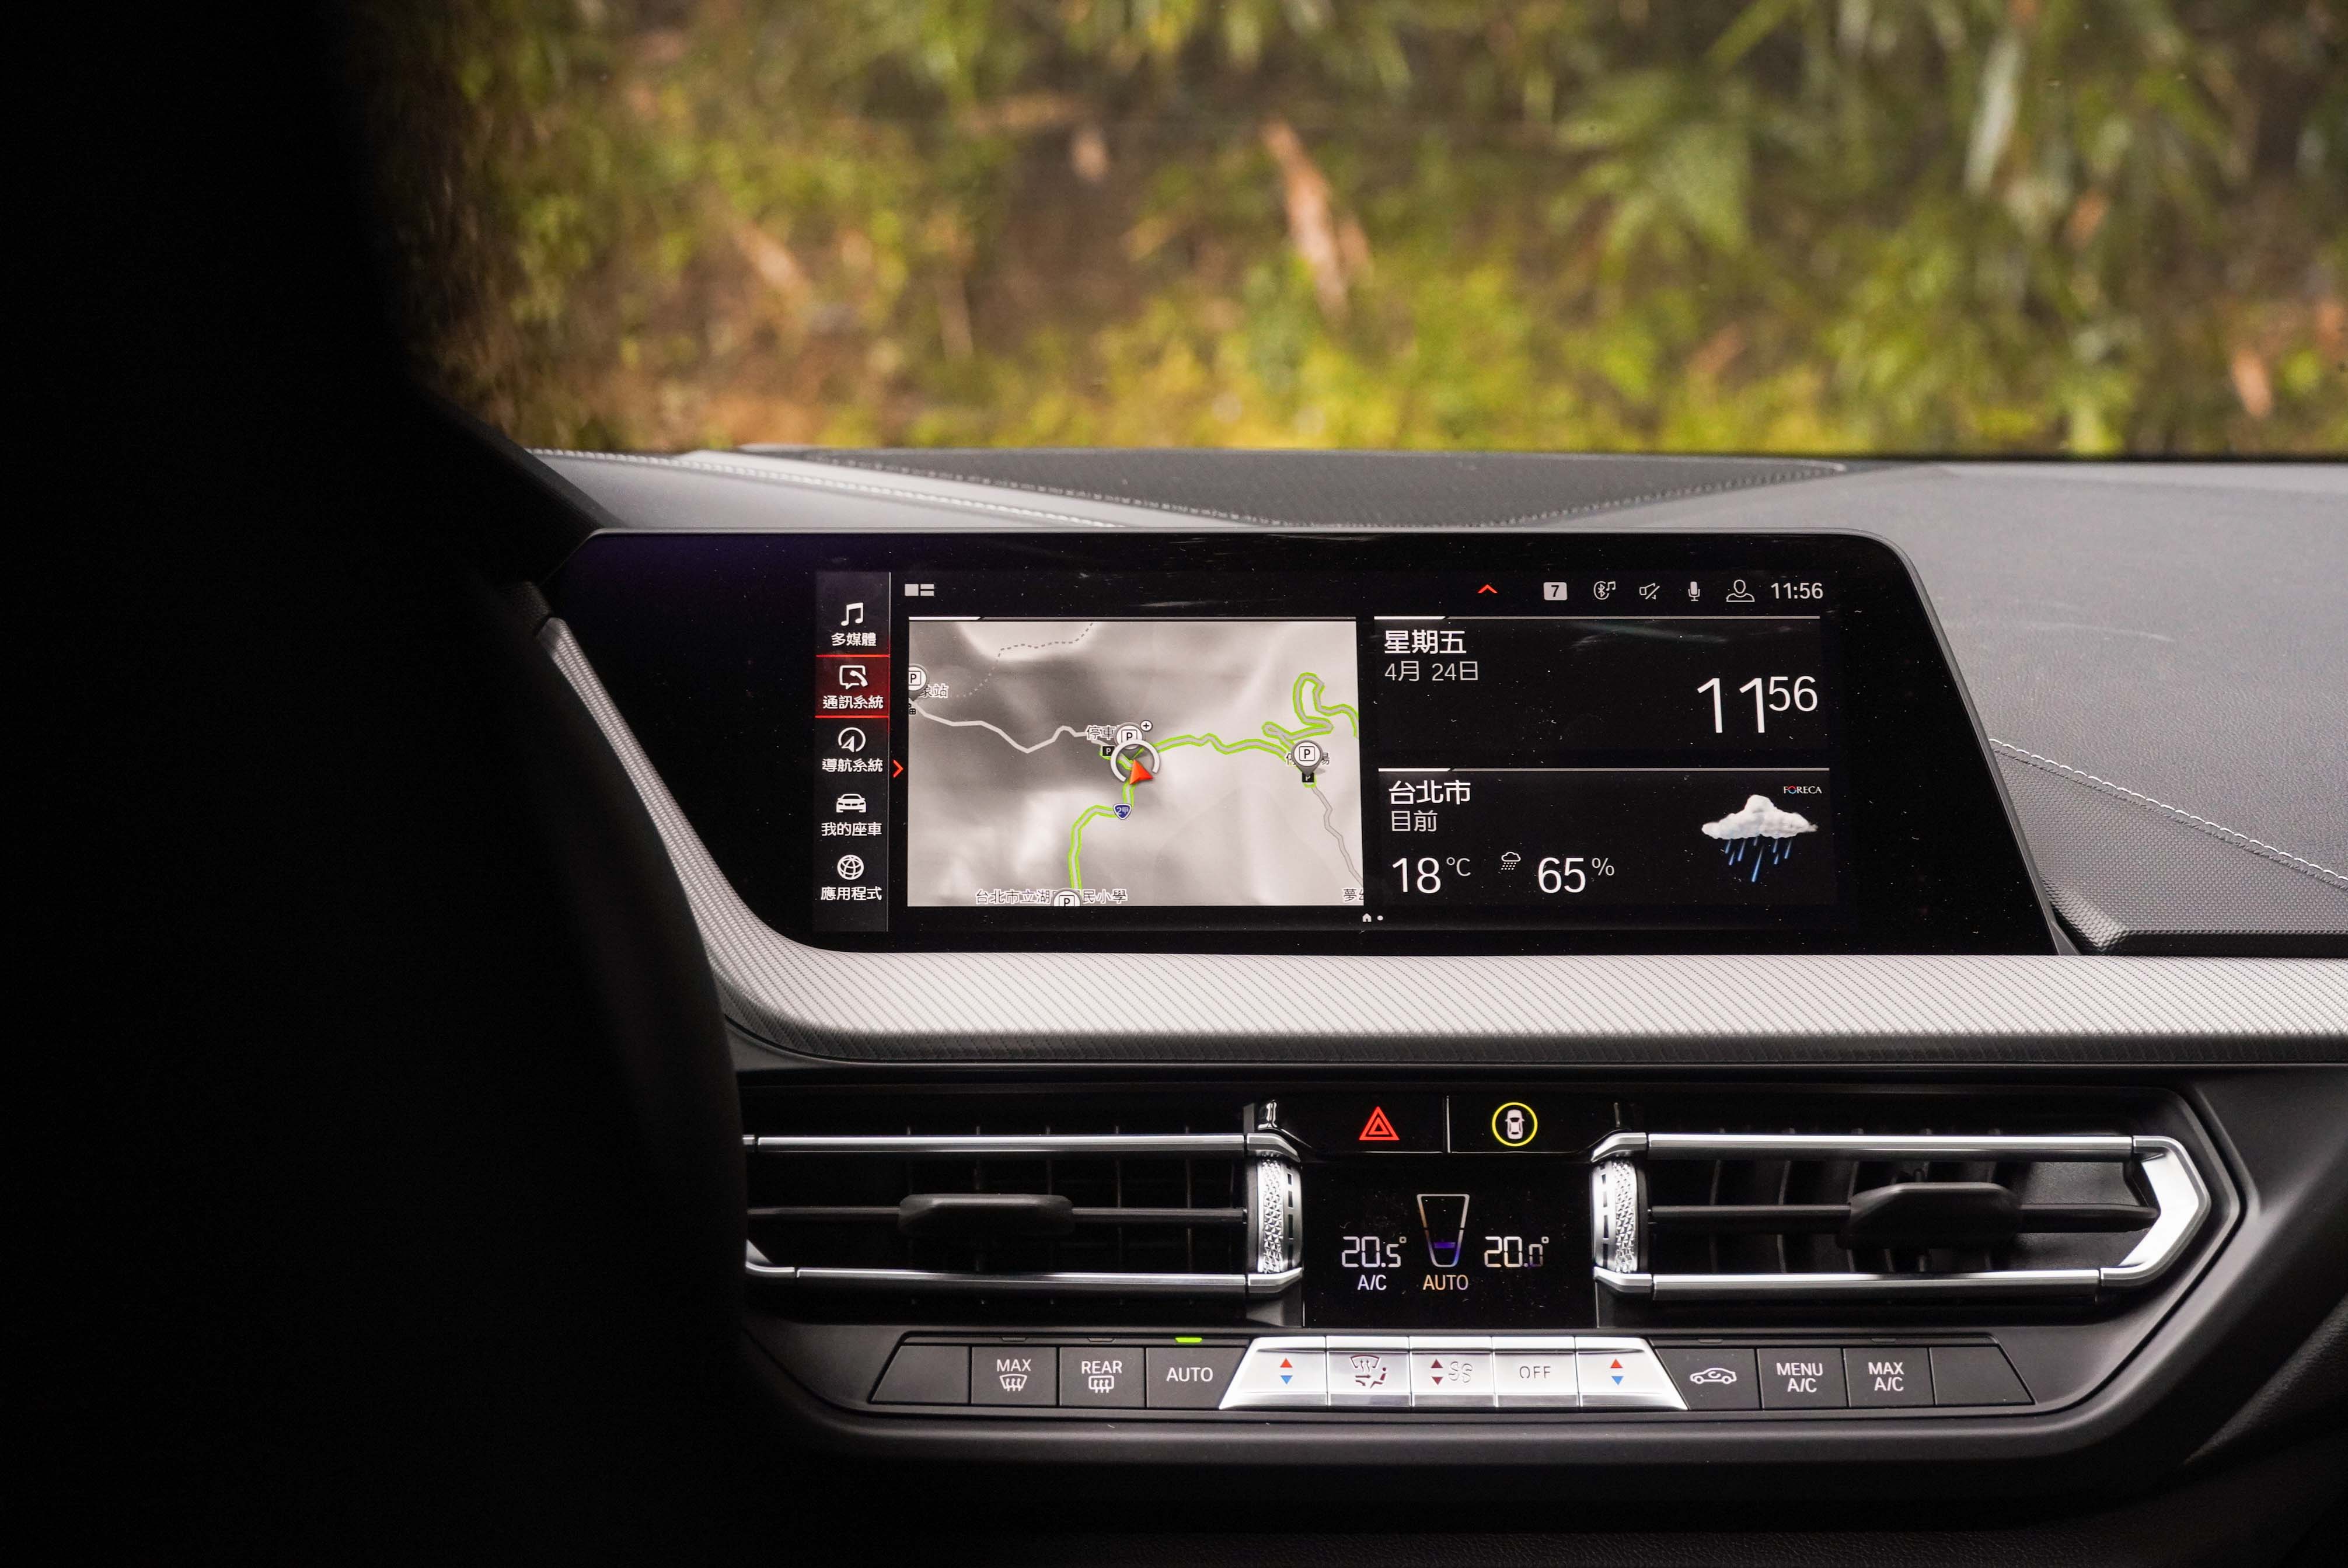 標配雙區恆溫空調、10.25 吋中控觸控螢幕、BMW 智能衛星導航系統與 iDrive7.0 使用者介面。